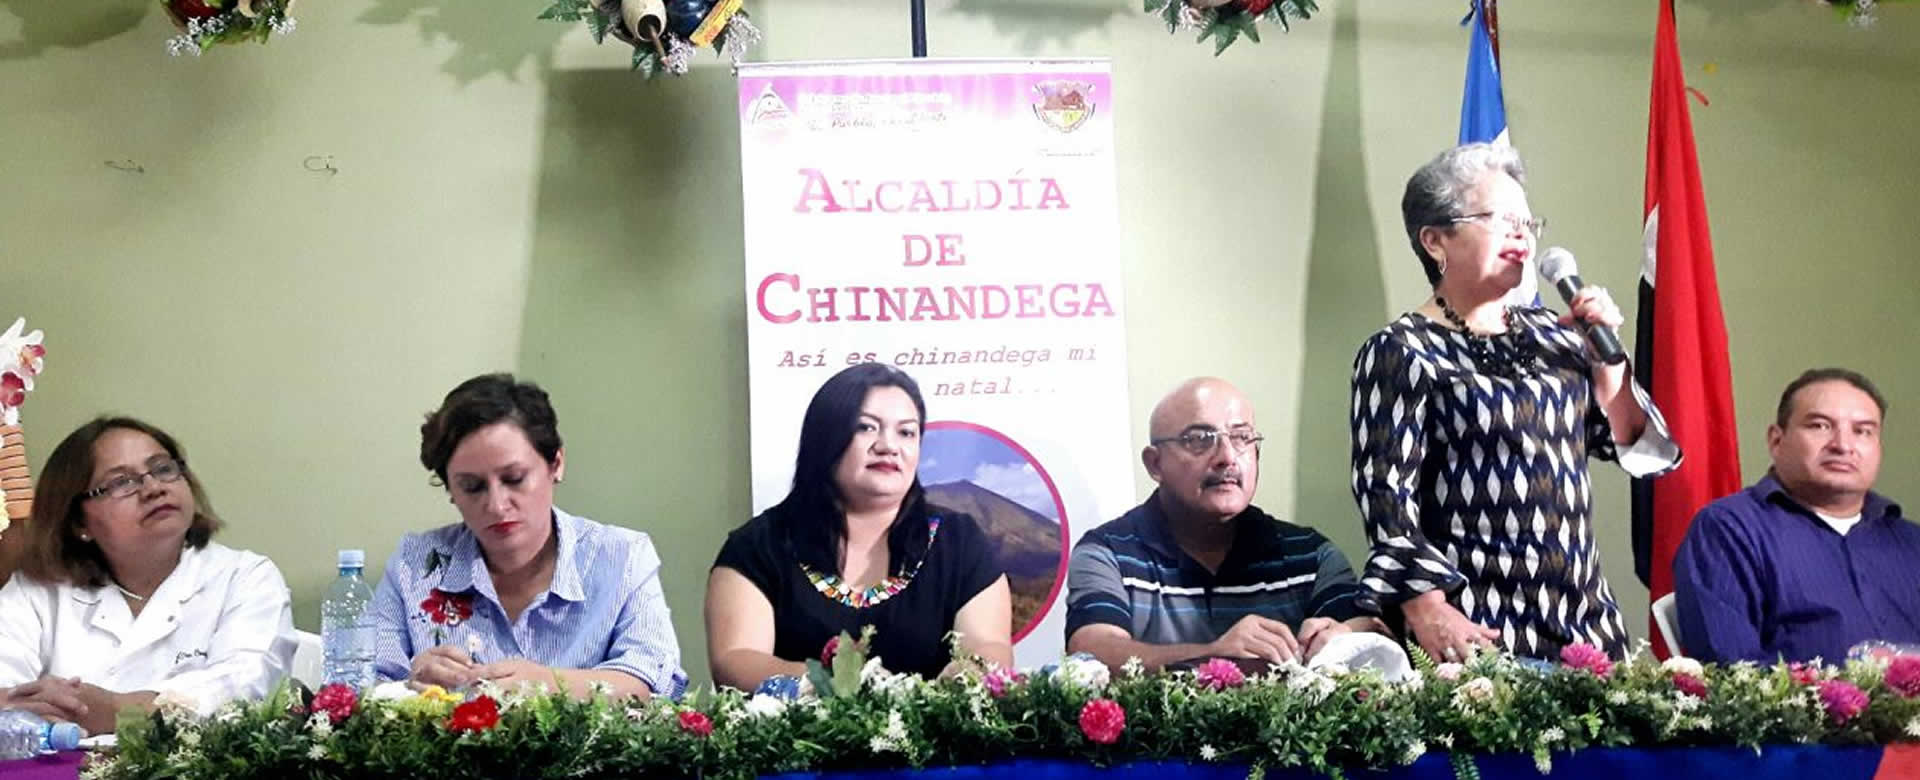 Feligreses de Chinandega se preparan para celebrar a Nuestra Señora Santa Ana